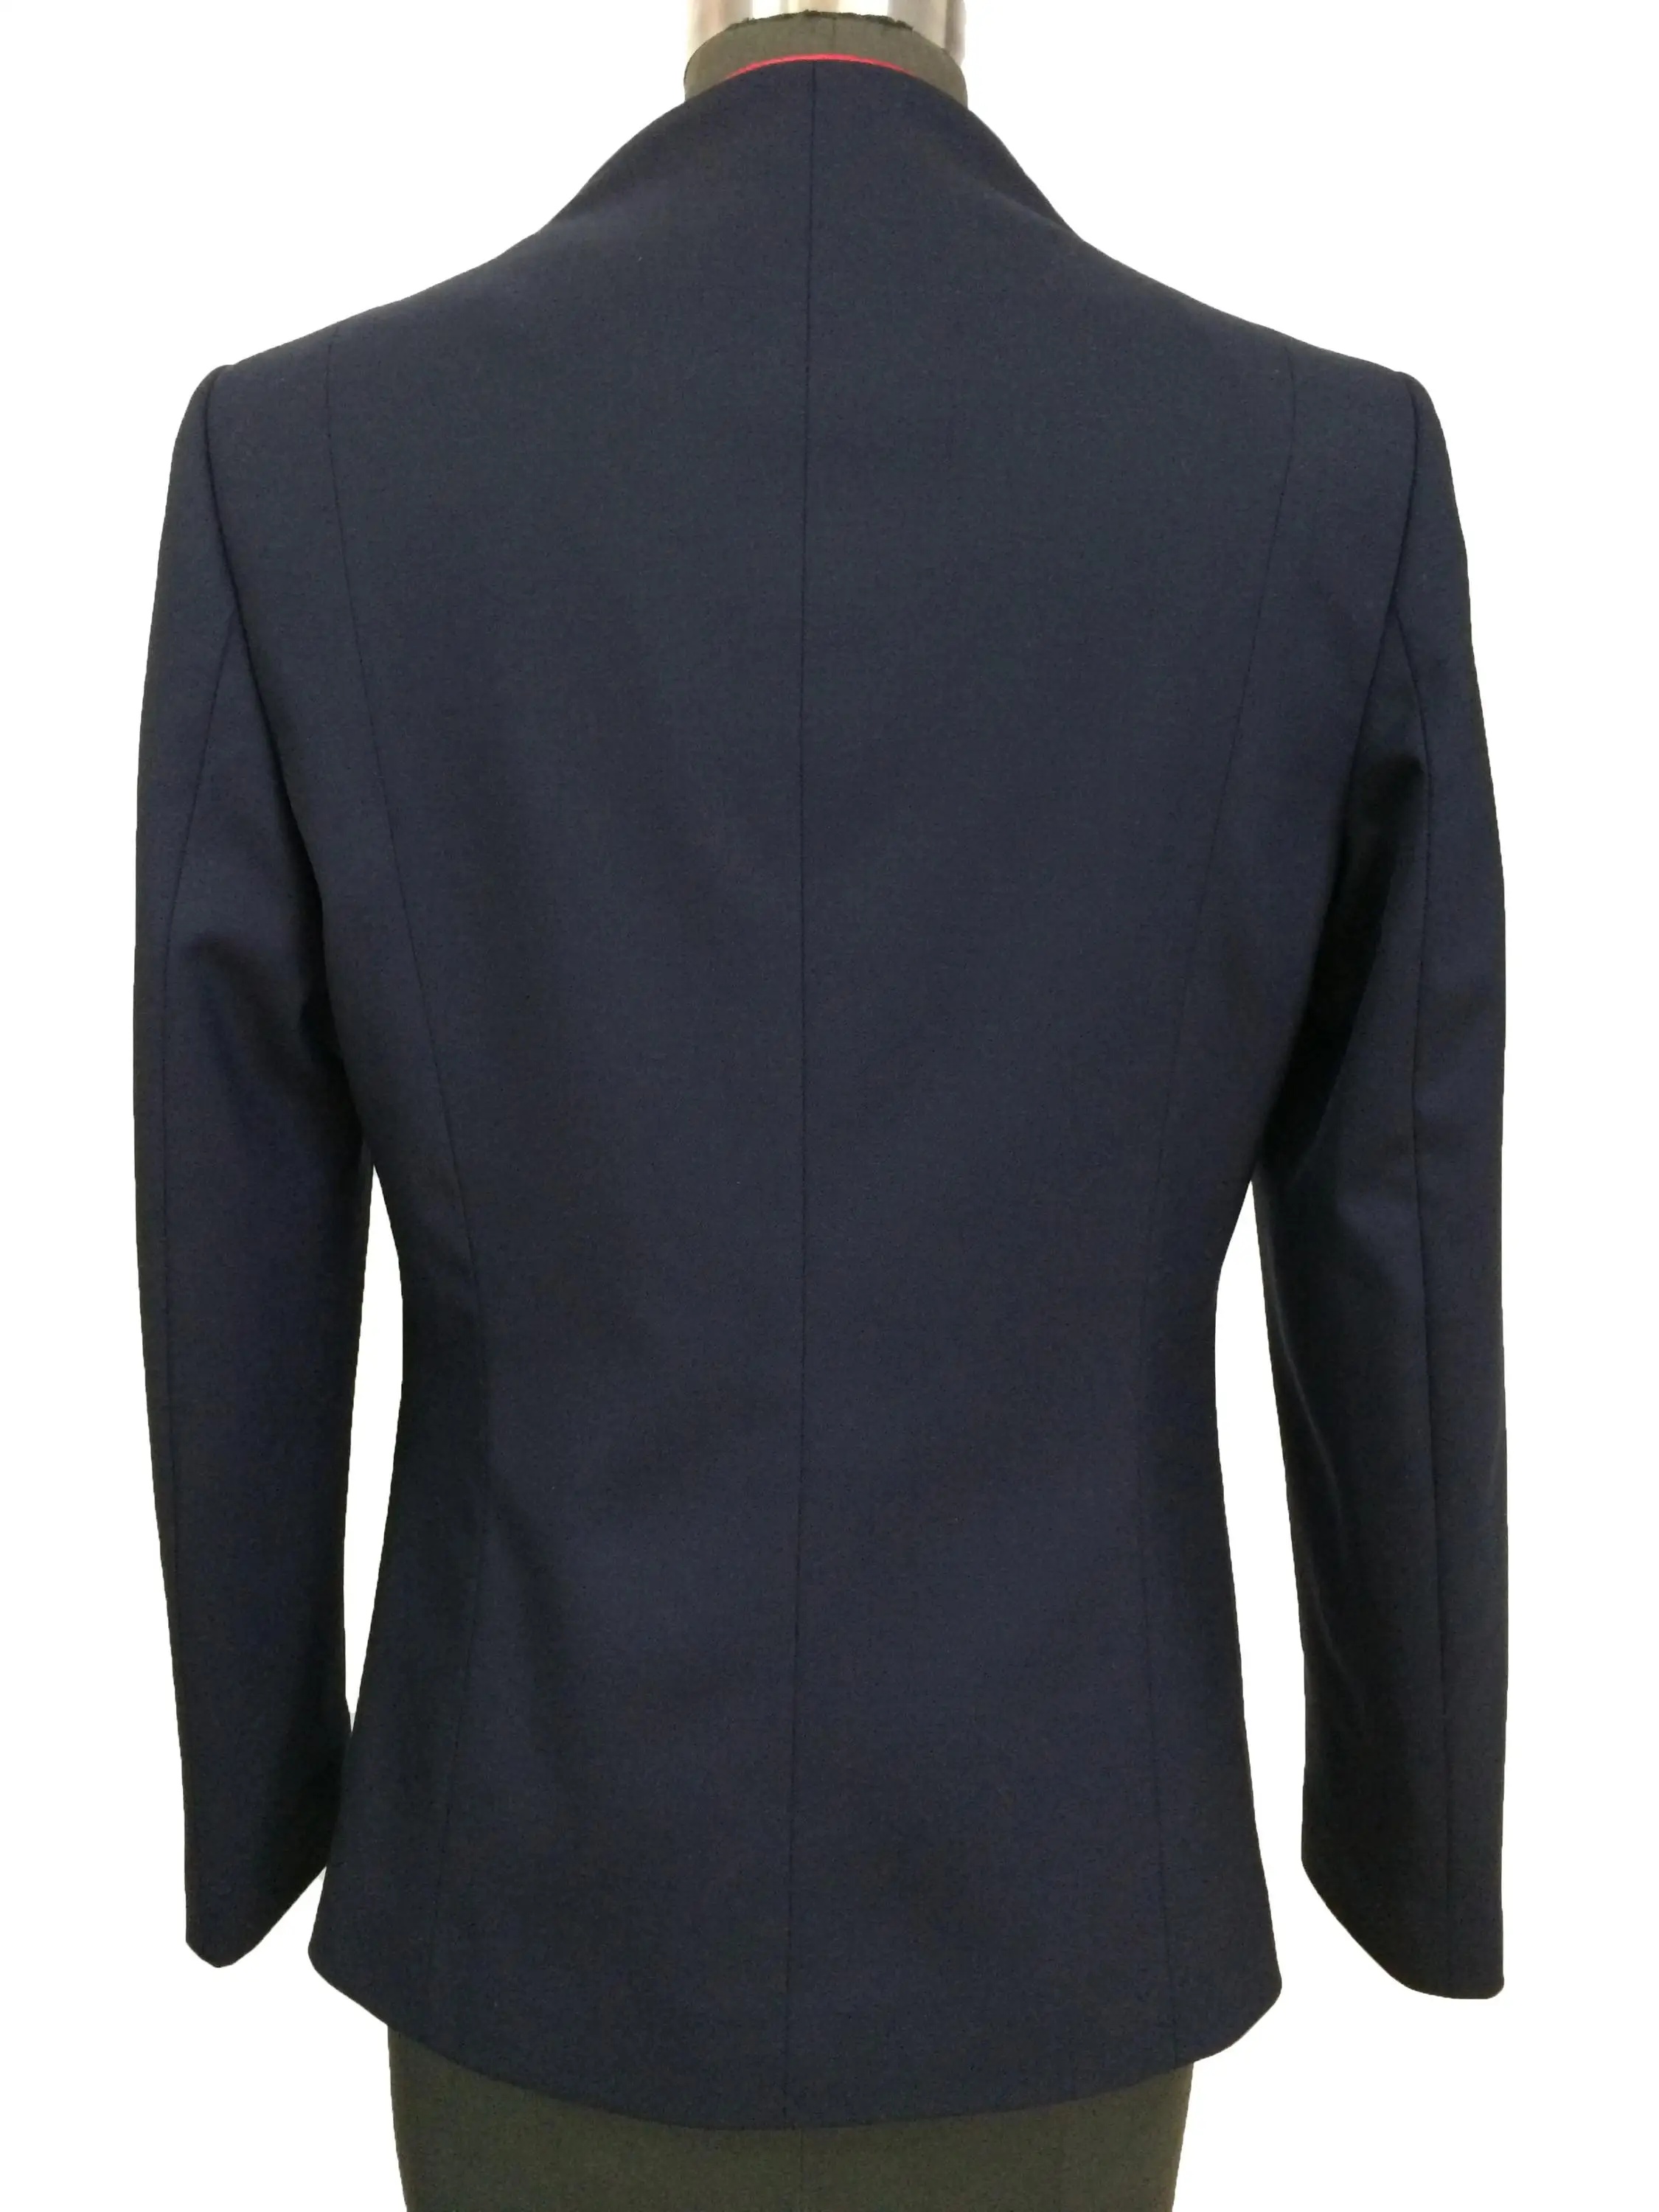 Ladies Mandarin Collar Suit V-neck Uniform - Buy Ladies Office Uniform ...